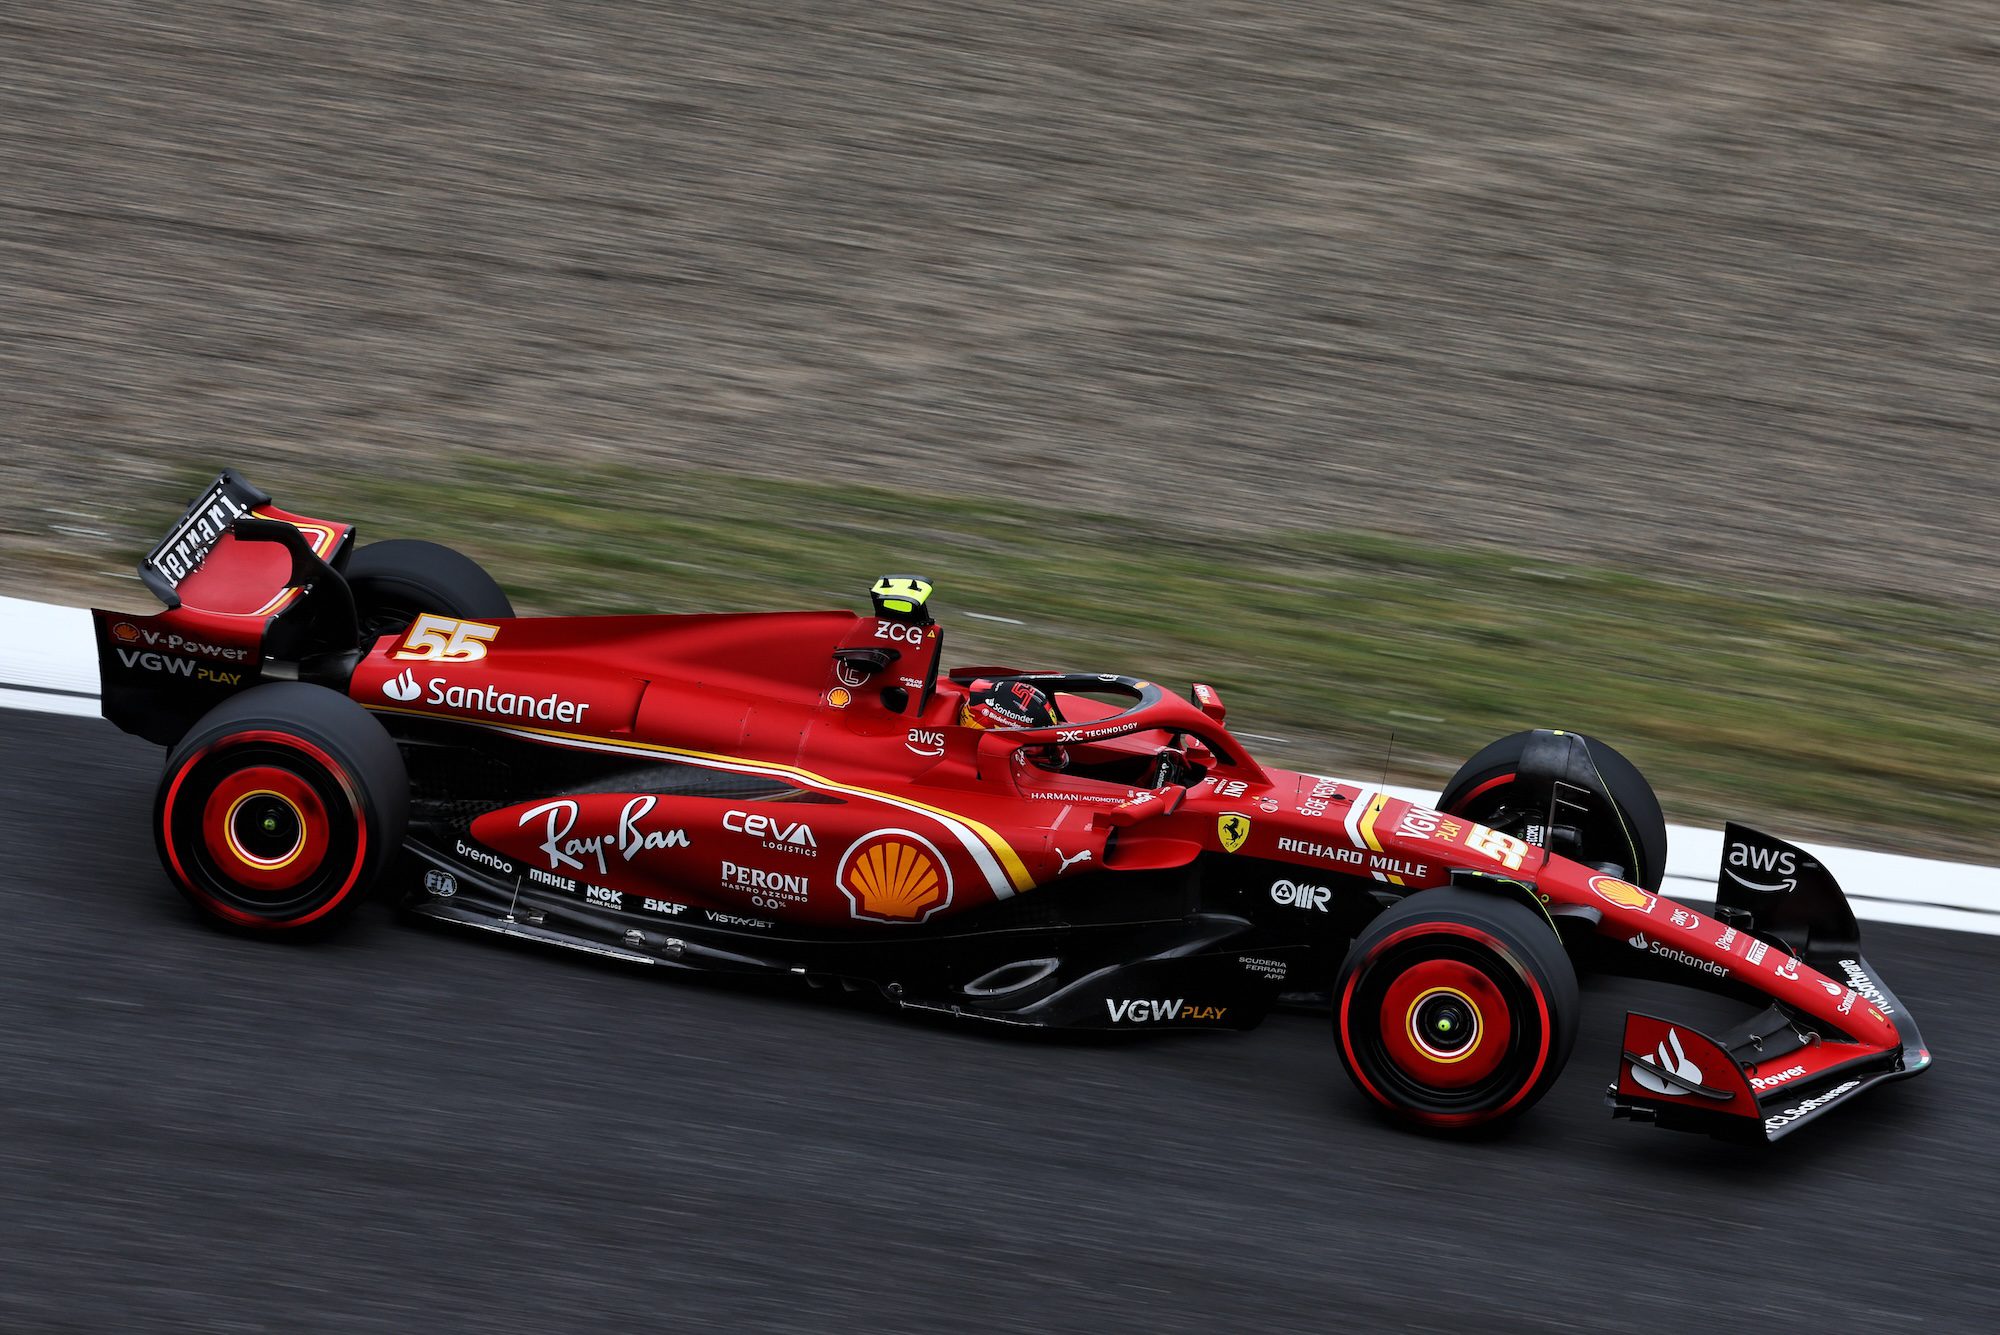 F1: Sainz pede suspensão ativa para carros de 2026